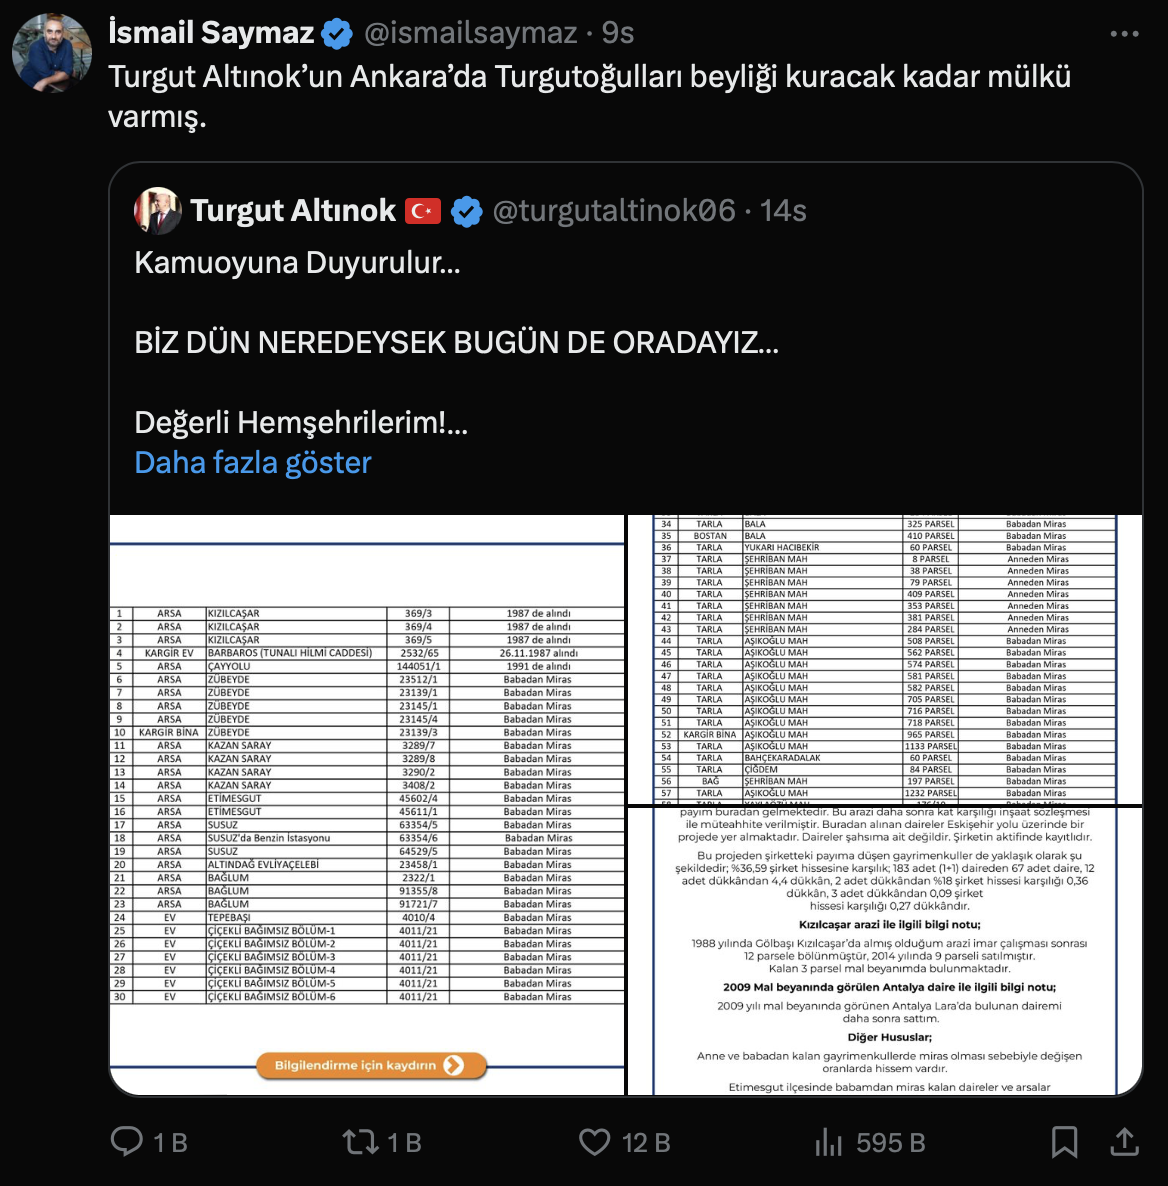 Turgut Altınok'un mal varlığını açıklamasına sosyal medyada yorum yağdı: "Babadan miras olarak Ankara kalmış"